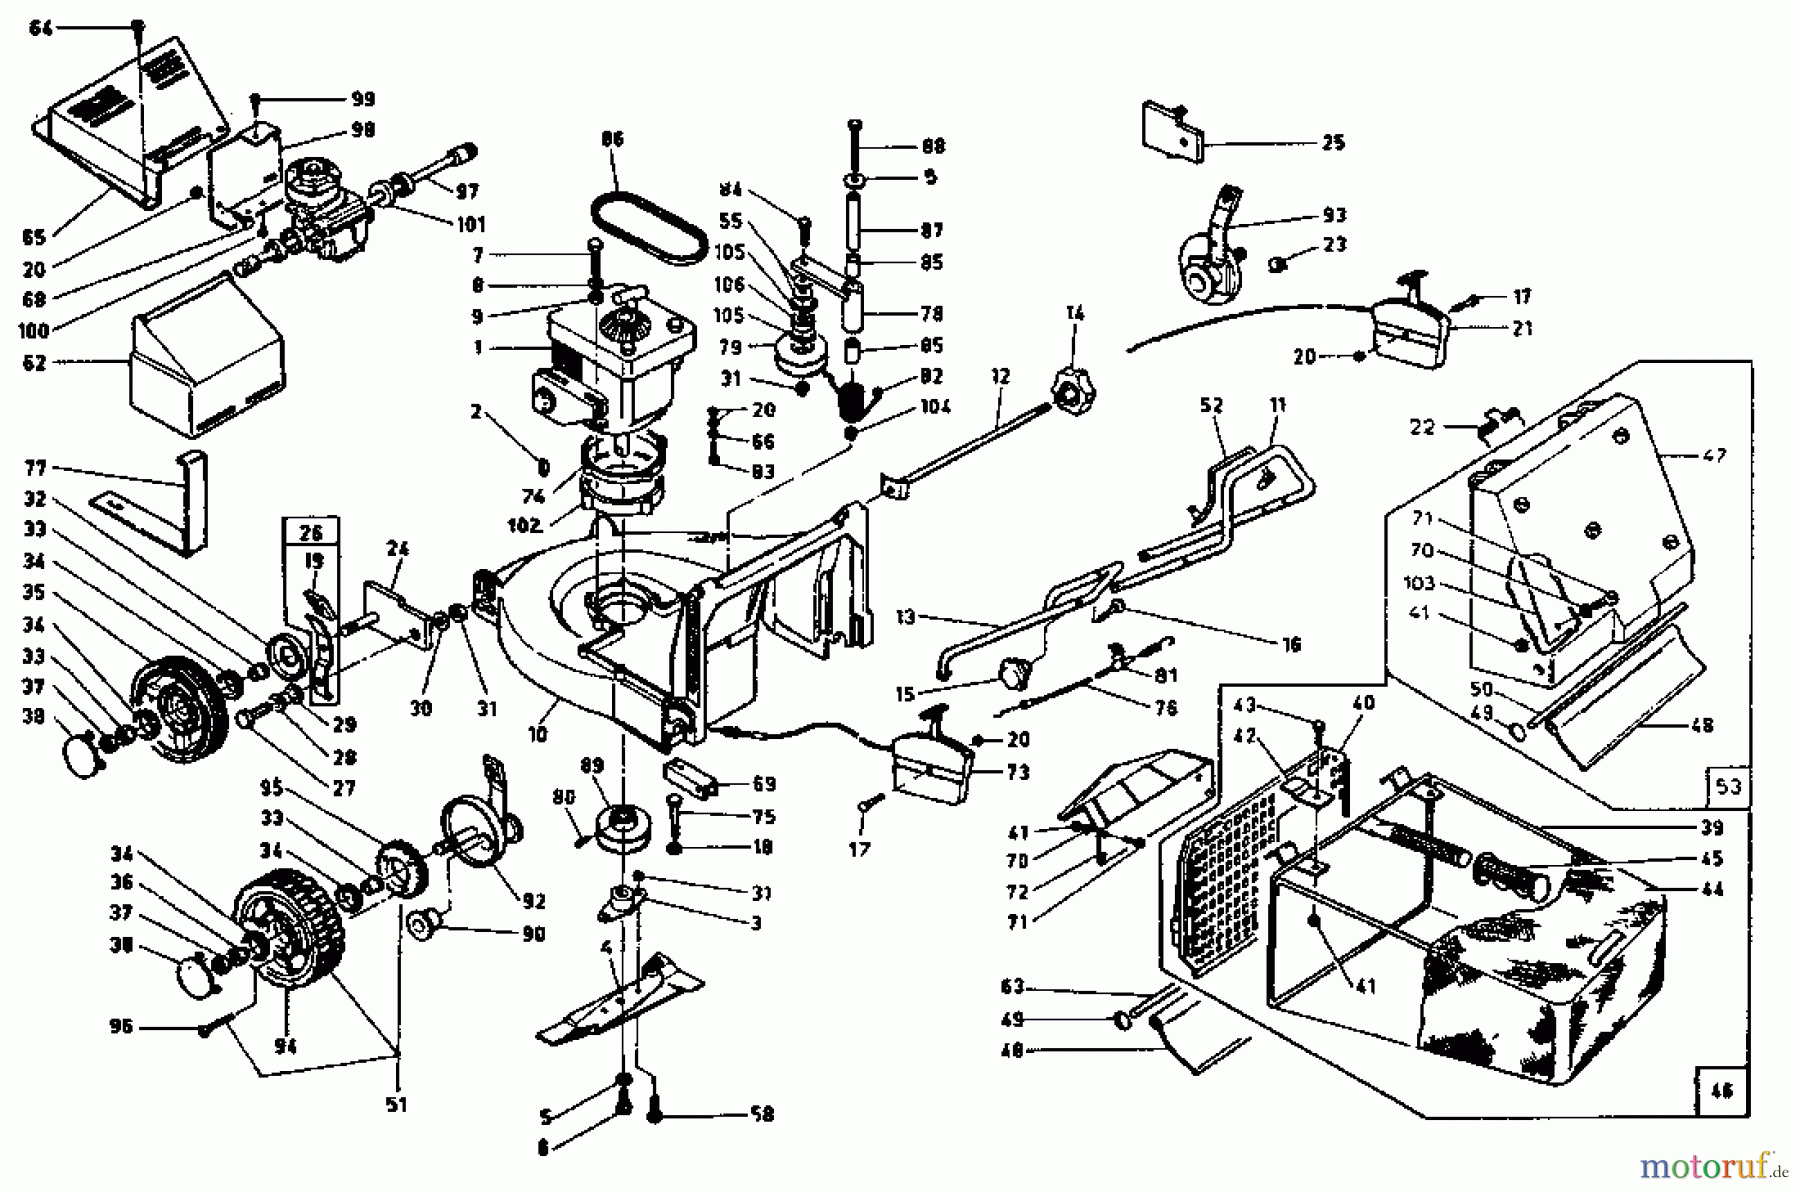  Rotaro Motormäher mit Antrieb ROTARO  55 SSV 189-0159  (1989) Grundgerät